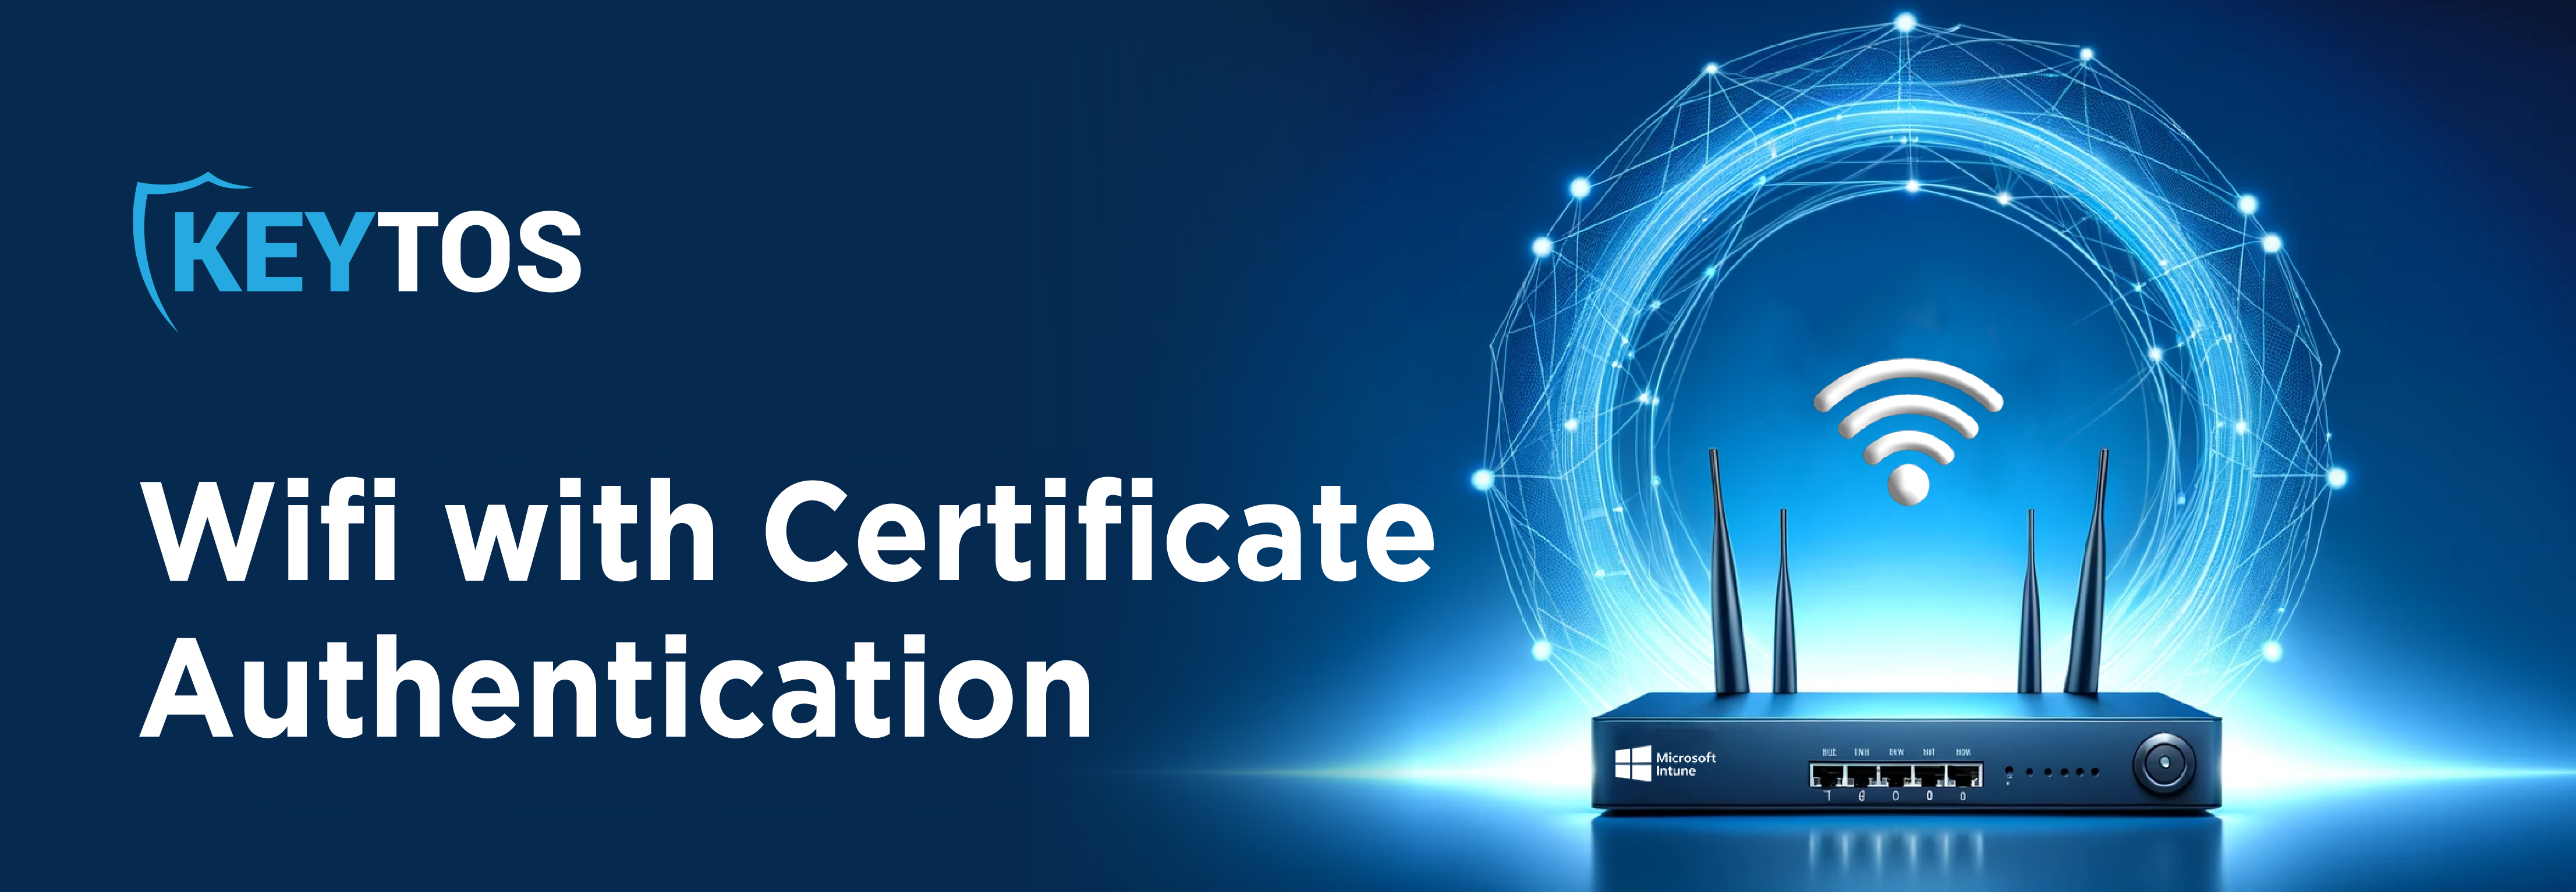 Como Usar Certificados para Autenticación de Wi-Fi con RADIUS y EAP-TLS